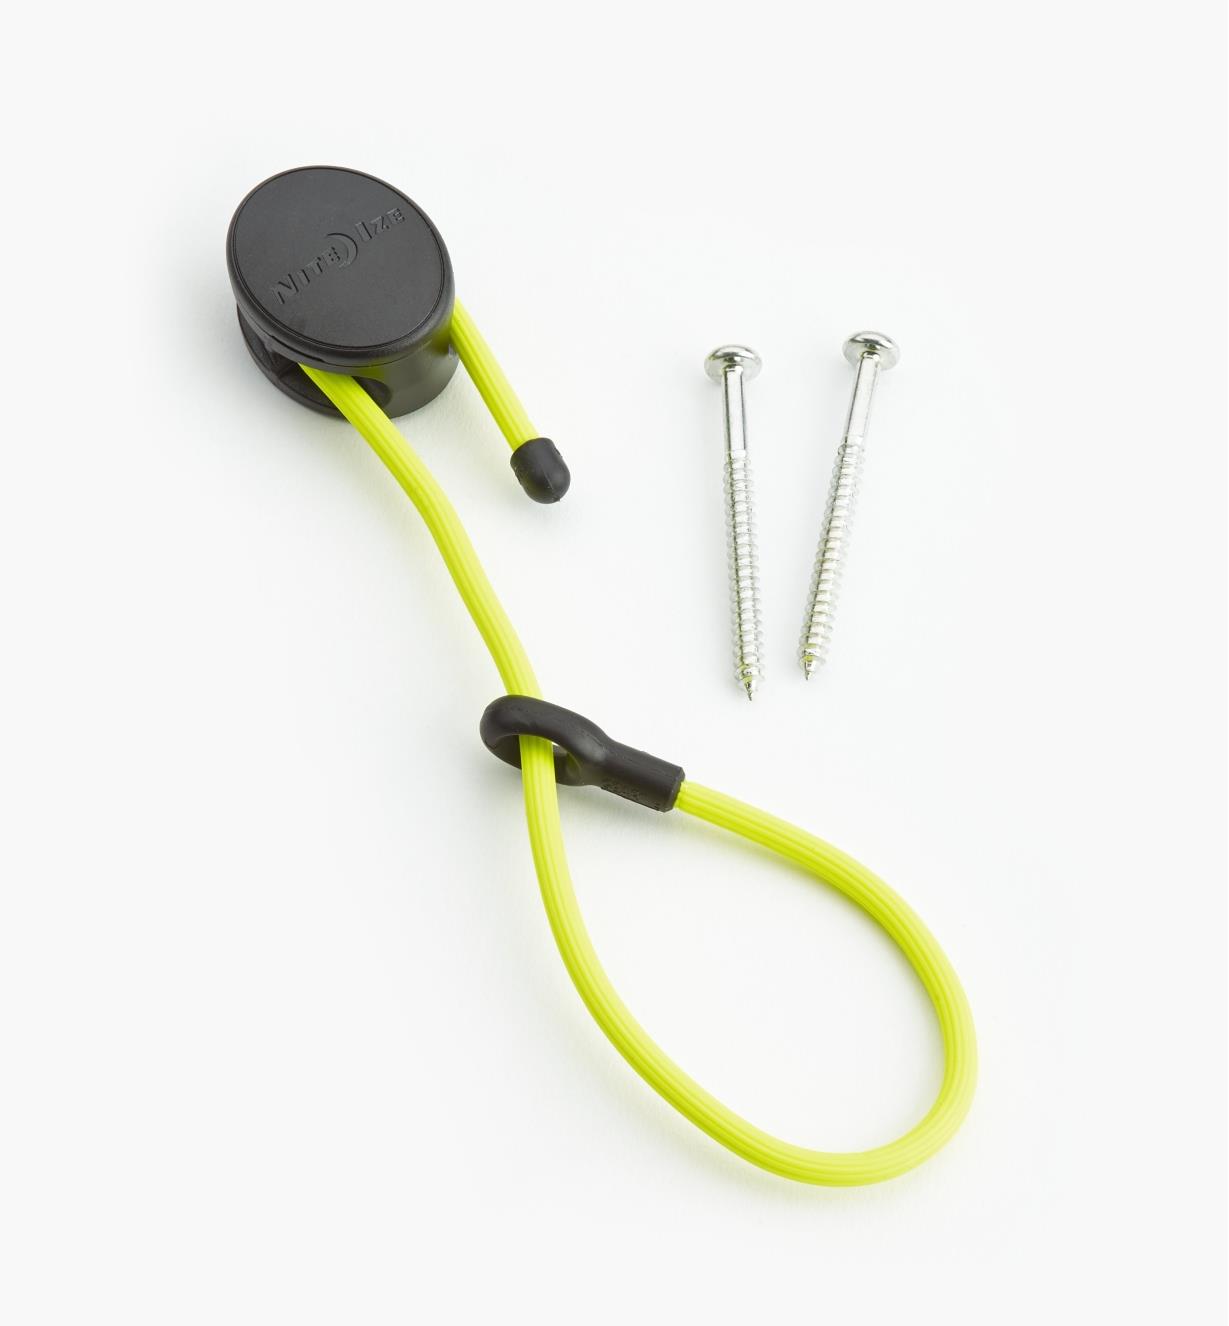 68K0701 - Attache flexible de 12 po et ancrage Gear Tie, jaune, l'unité